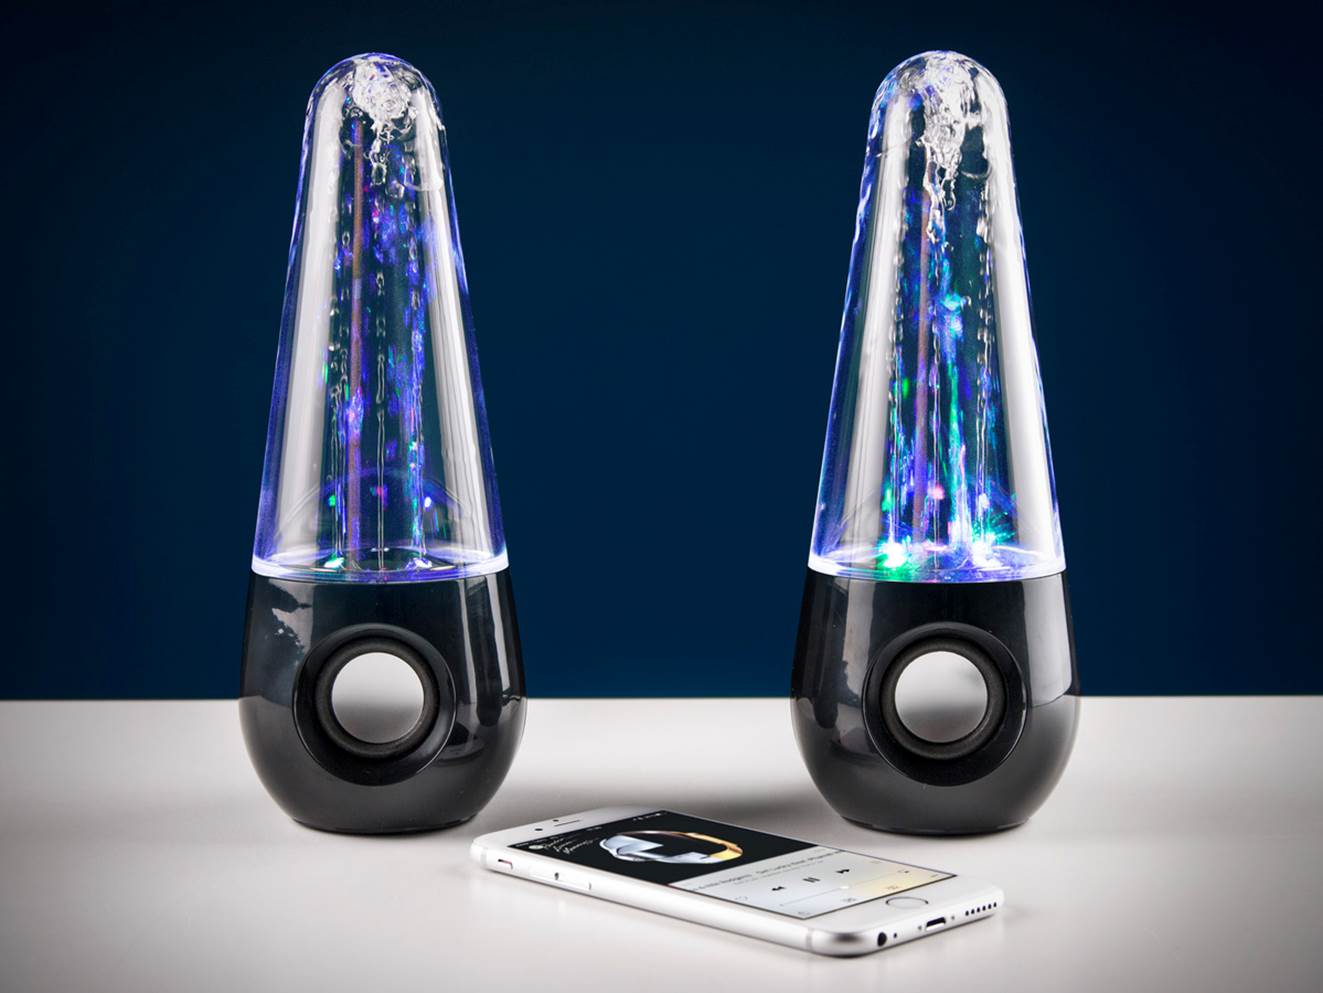 2 X Wasserfontänen Lautsprecher Wasserspiel USB Dancing Water Speaker 7n 